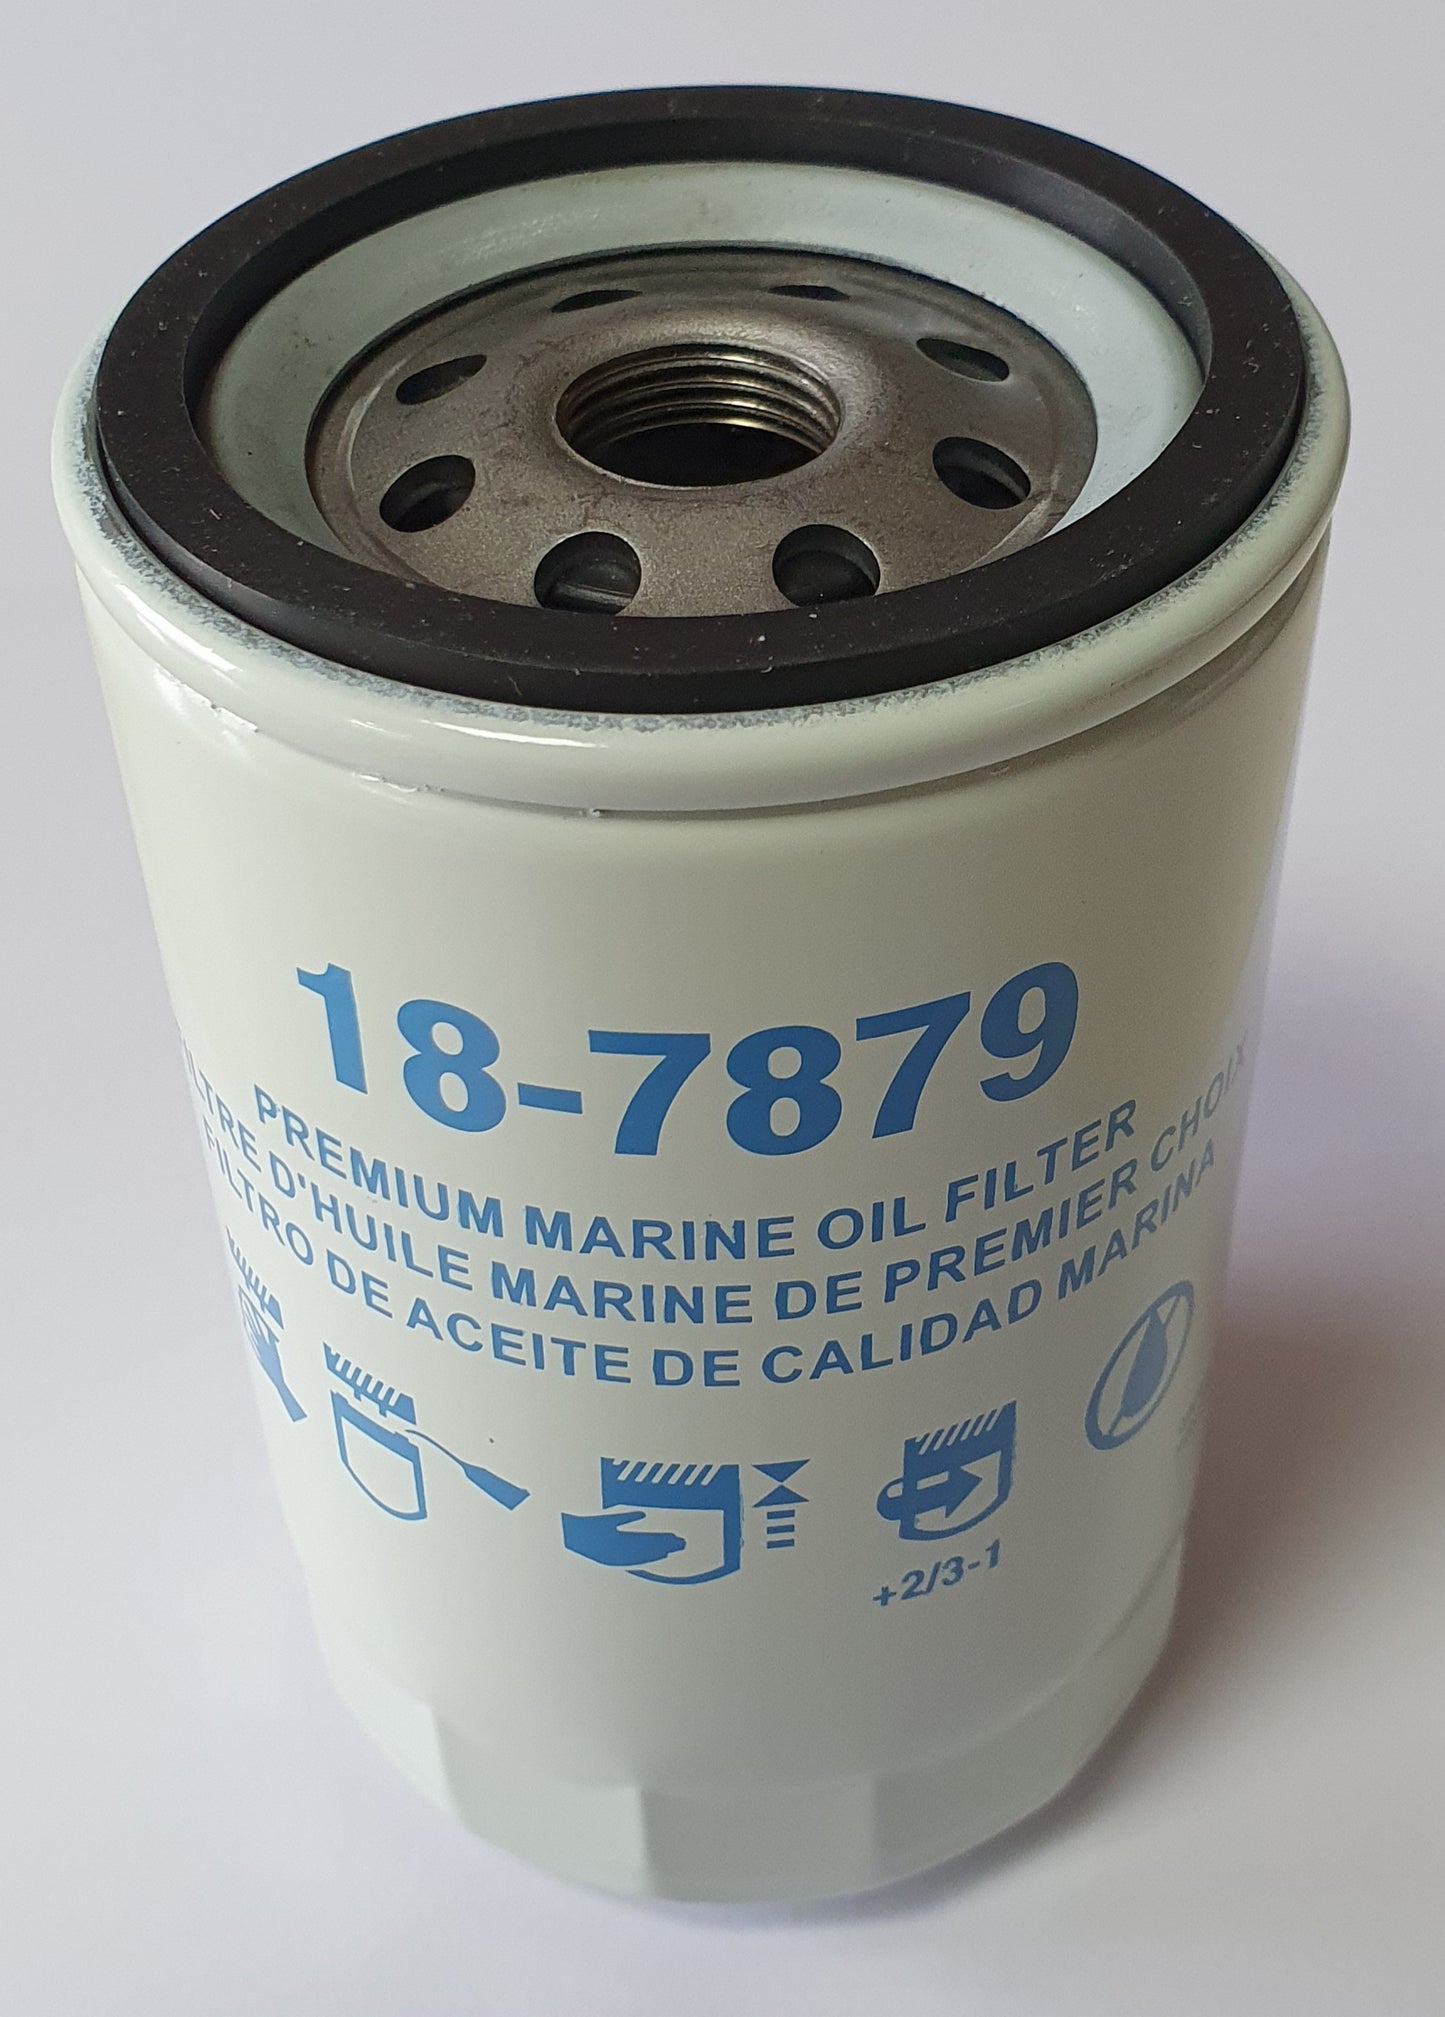 Oil filter MERCRUISER 3.8 4.3 - 18-7879